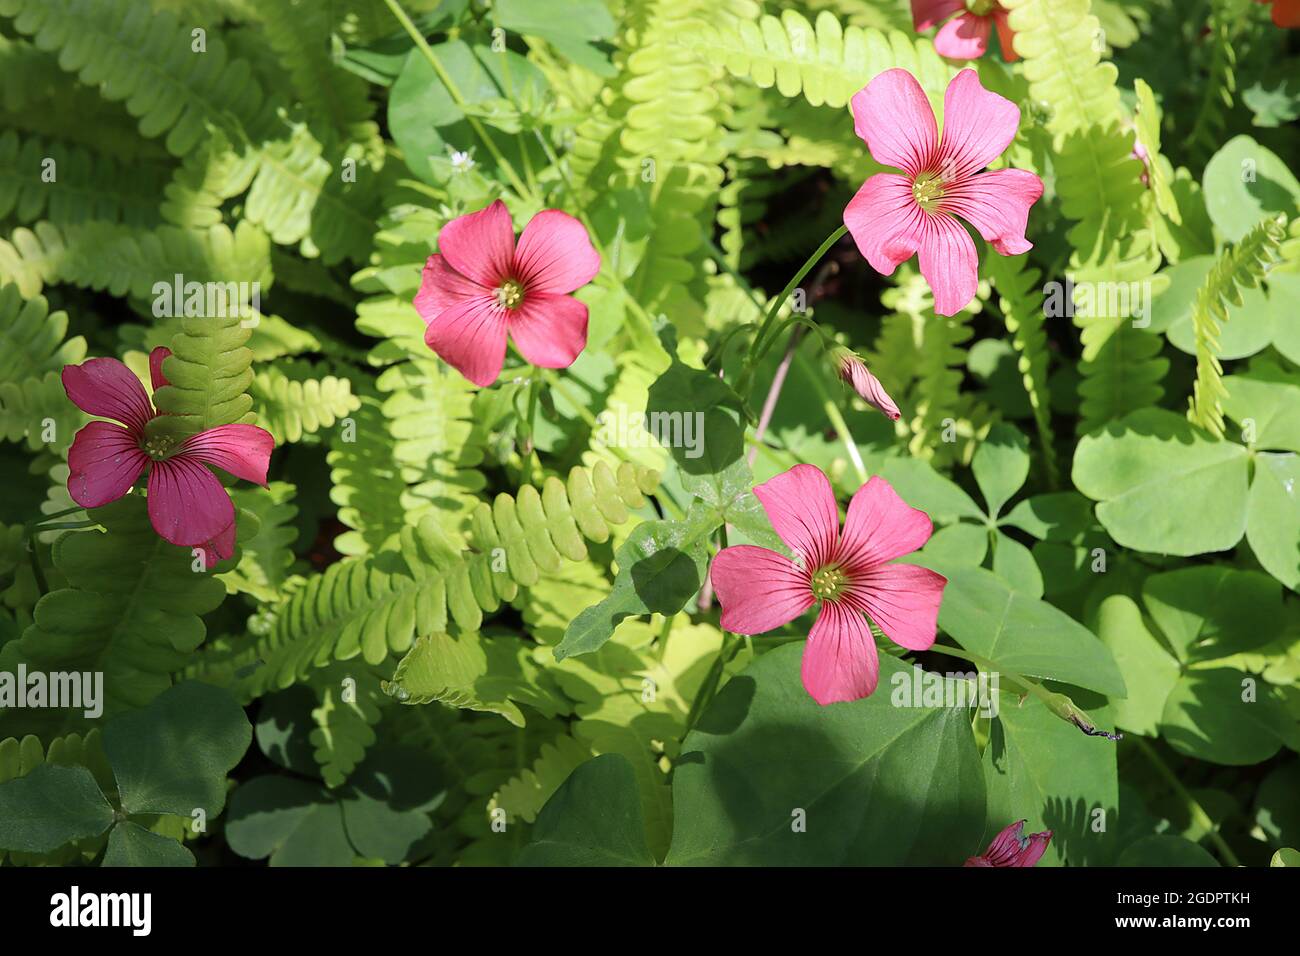 Blechnum penna-marina alpine water fern – pinnate fresh green fronds  Oxalis rosea pink woodsorrell – deep pink salver-shaped flowers,  July, England, Stock Photo